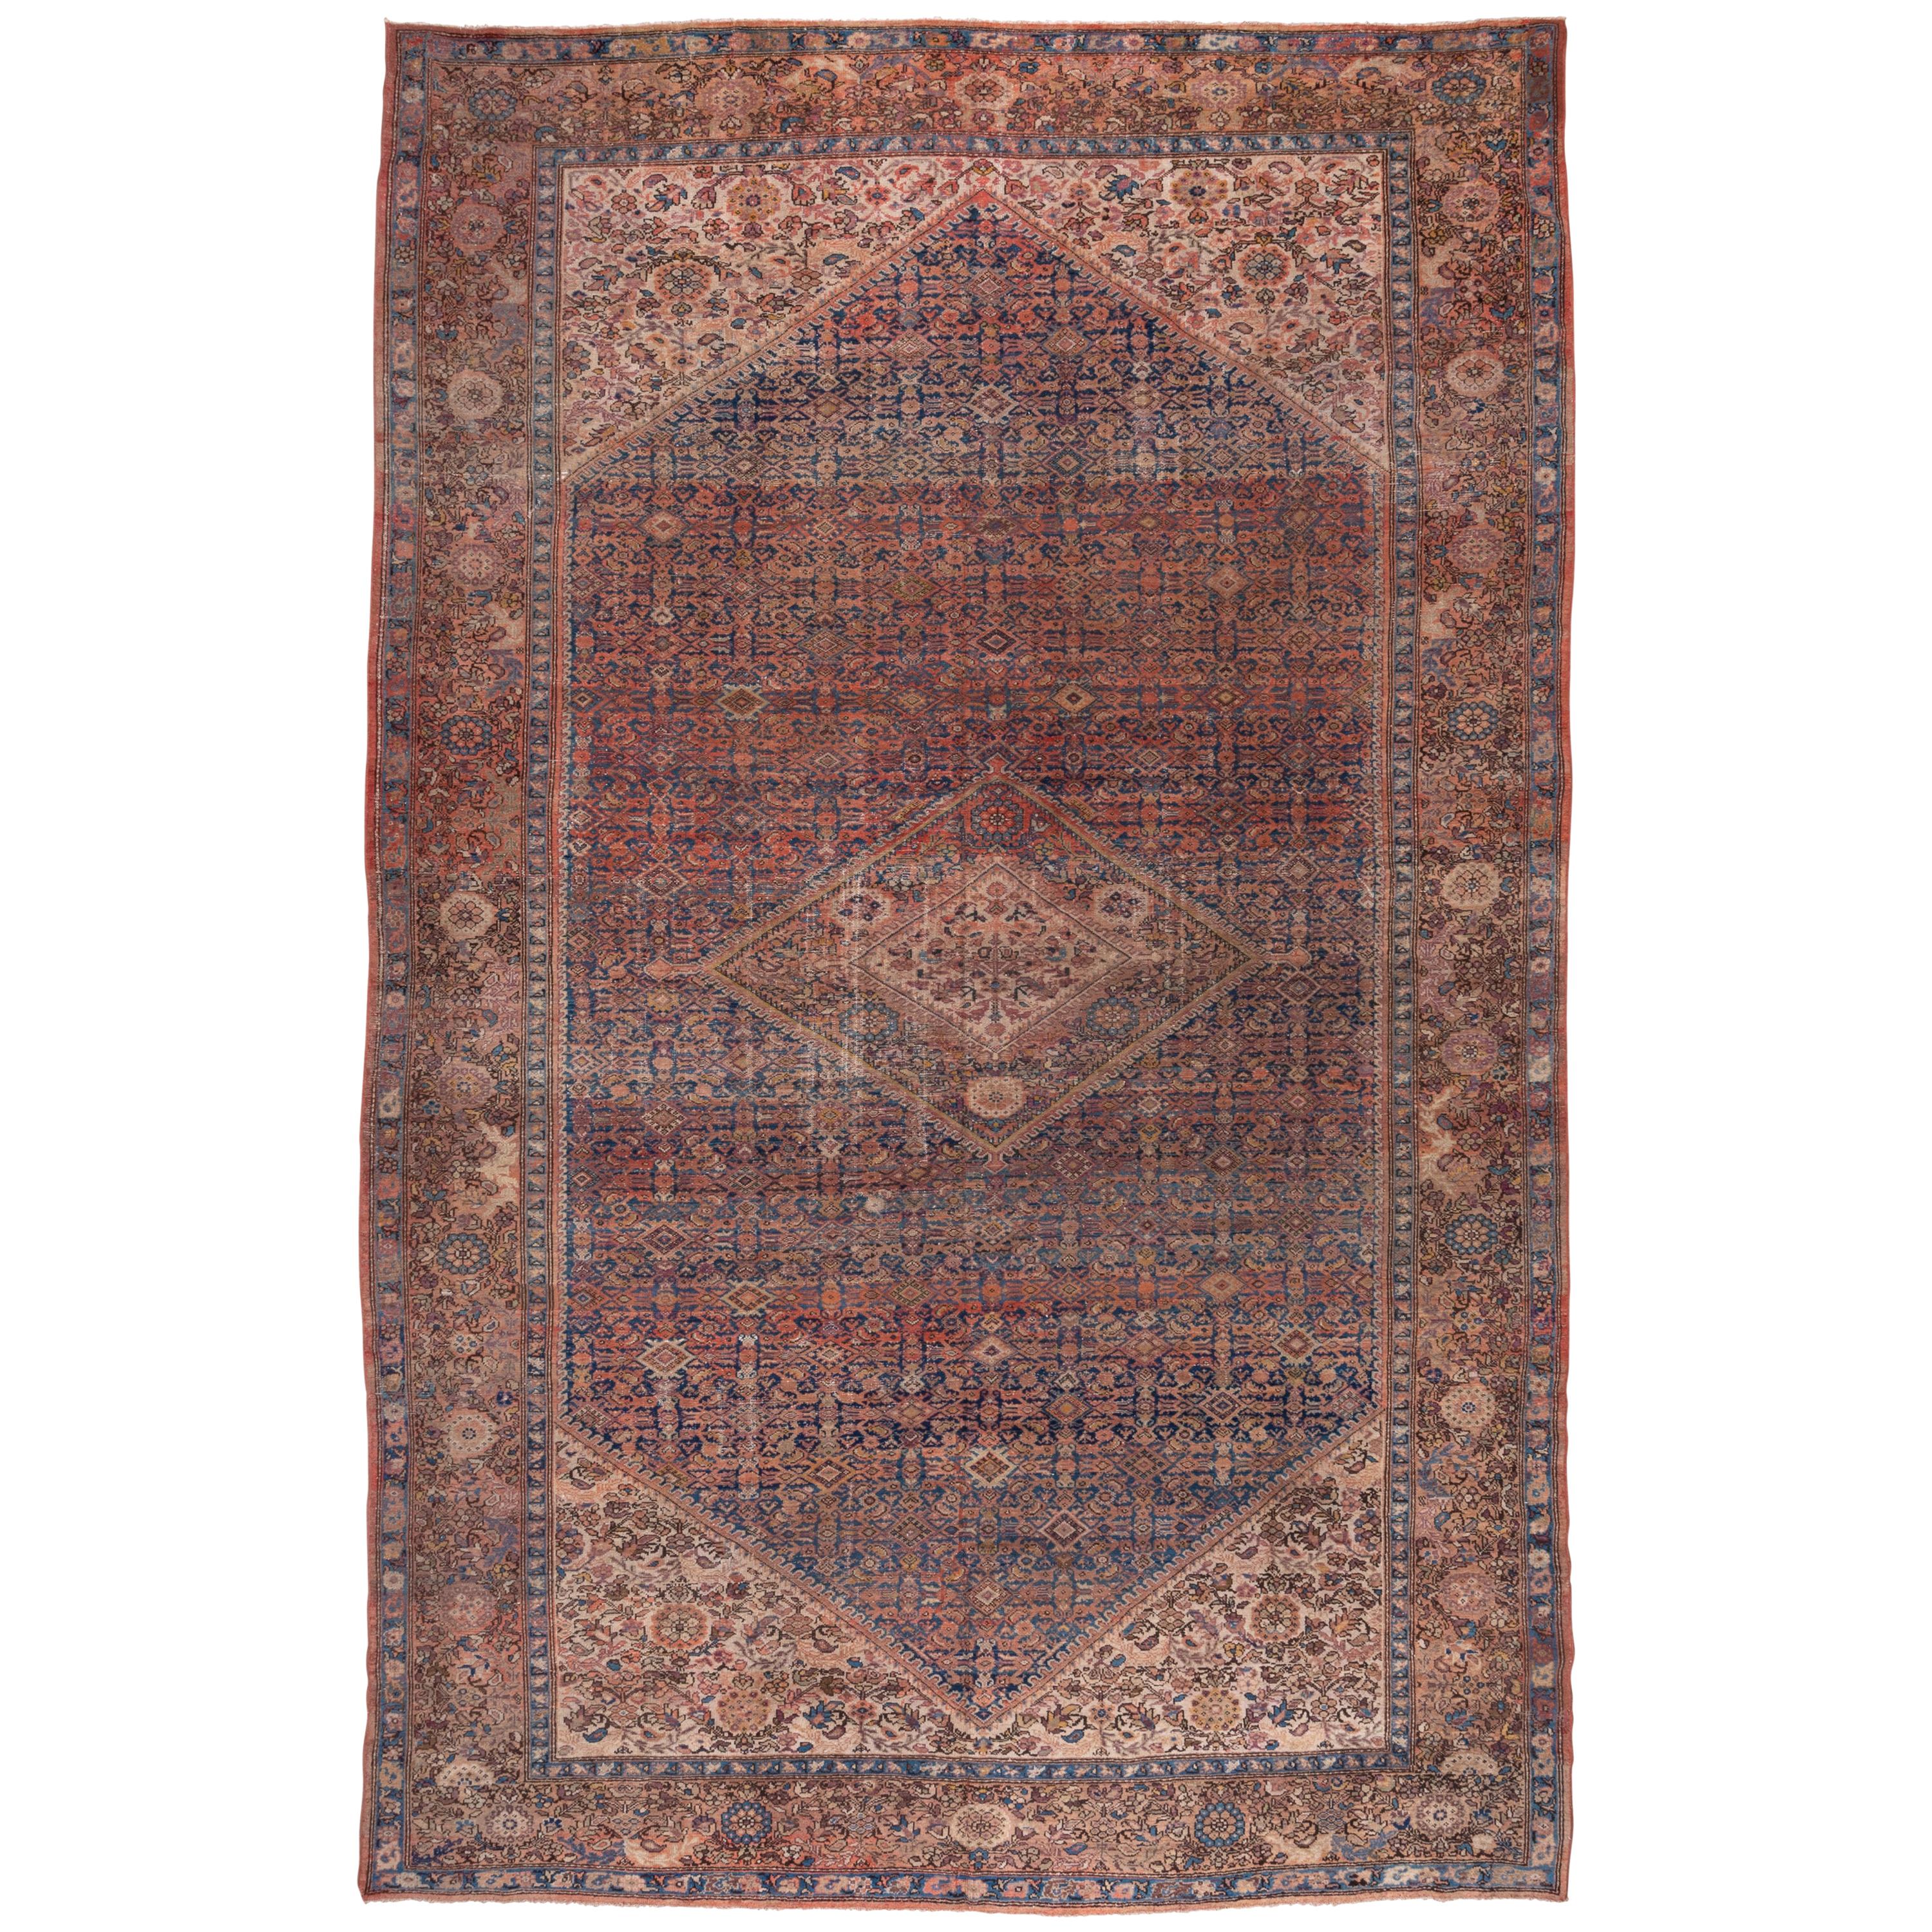 Antique Persian Malayer Carpet, circa 1910s